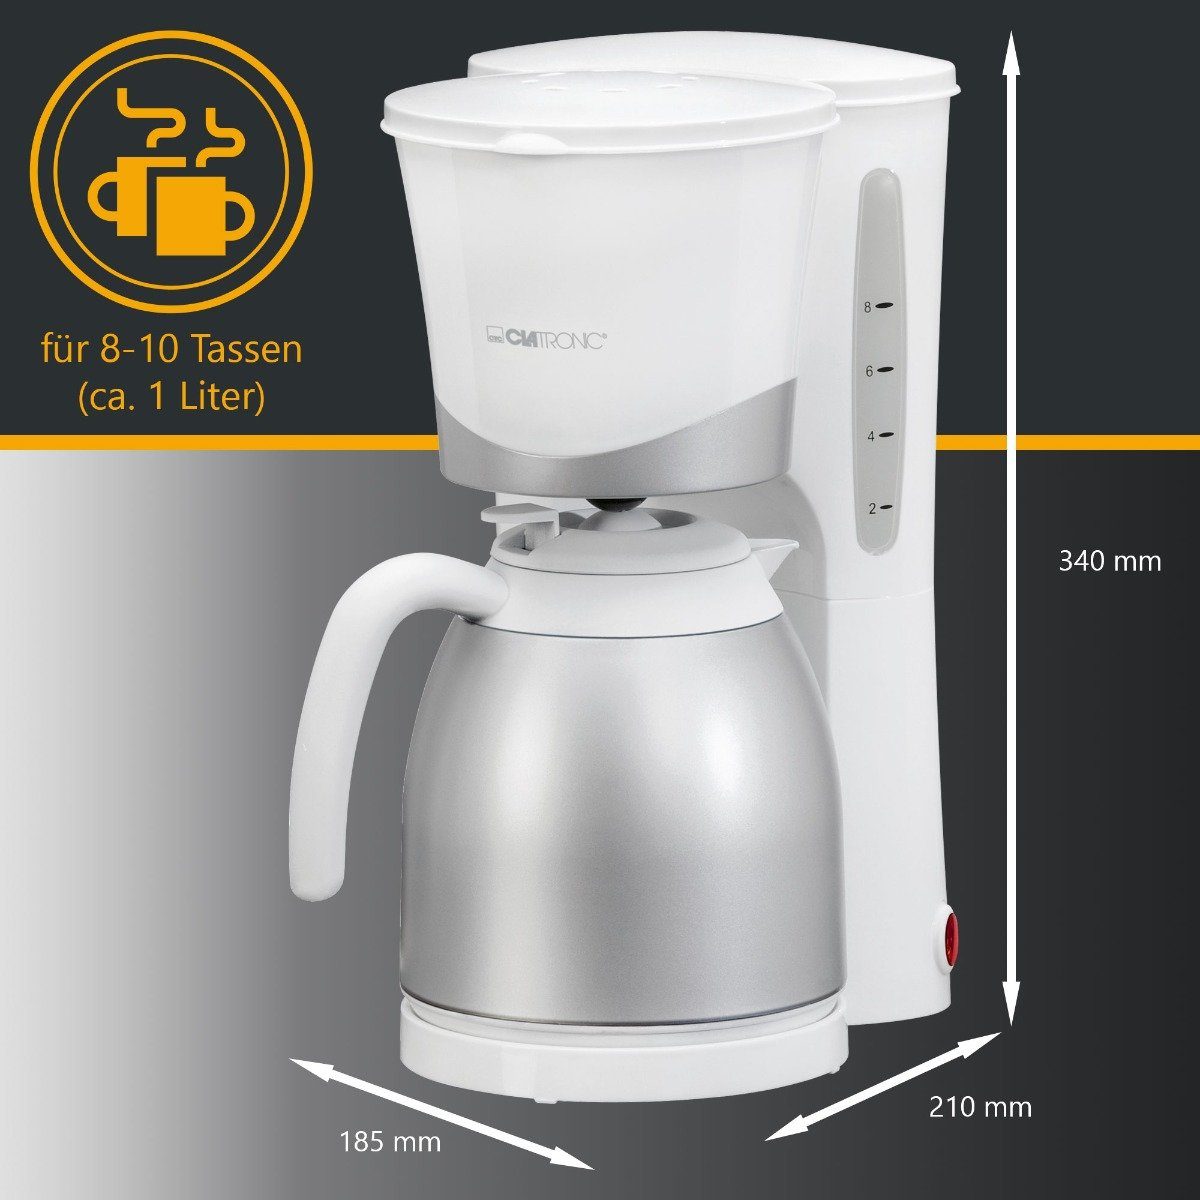 Thermokanne KA 8-10 3327, Kaffeemaschine Filterkaffeemaschine für weiß CLATRONIC Tassen,